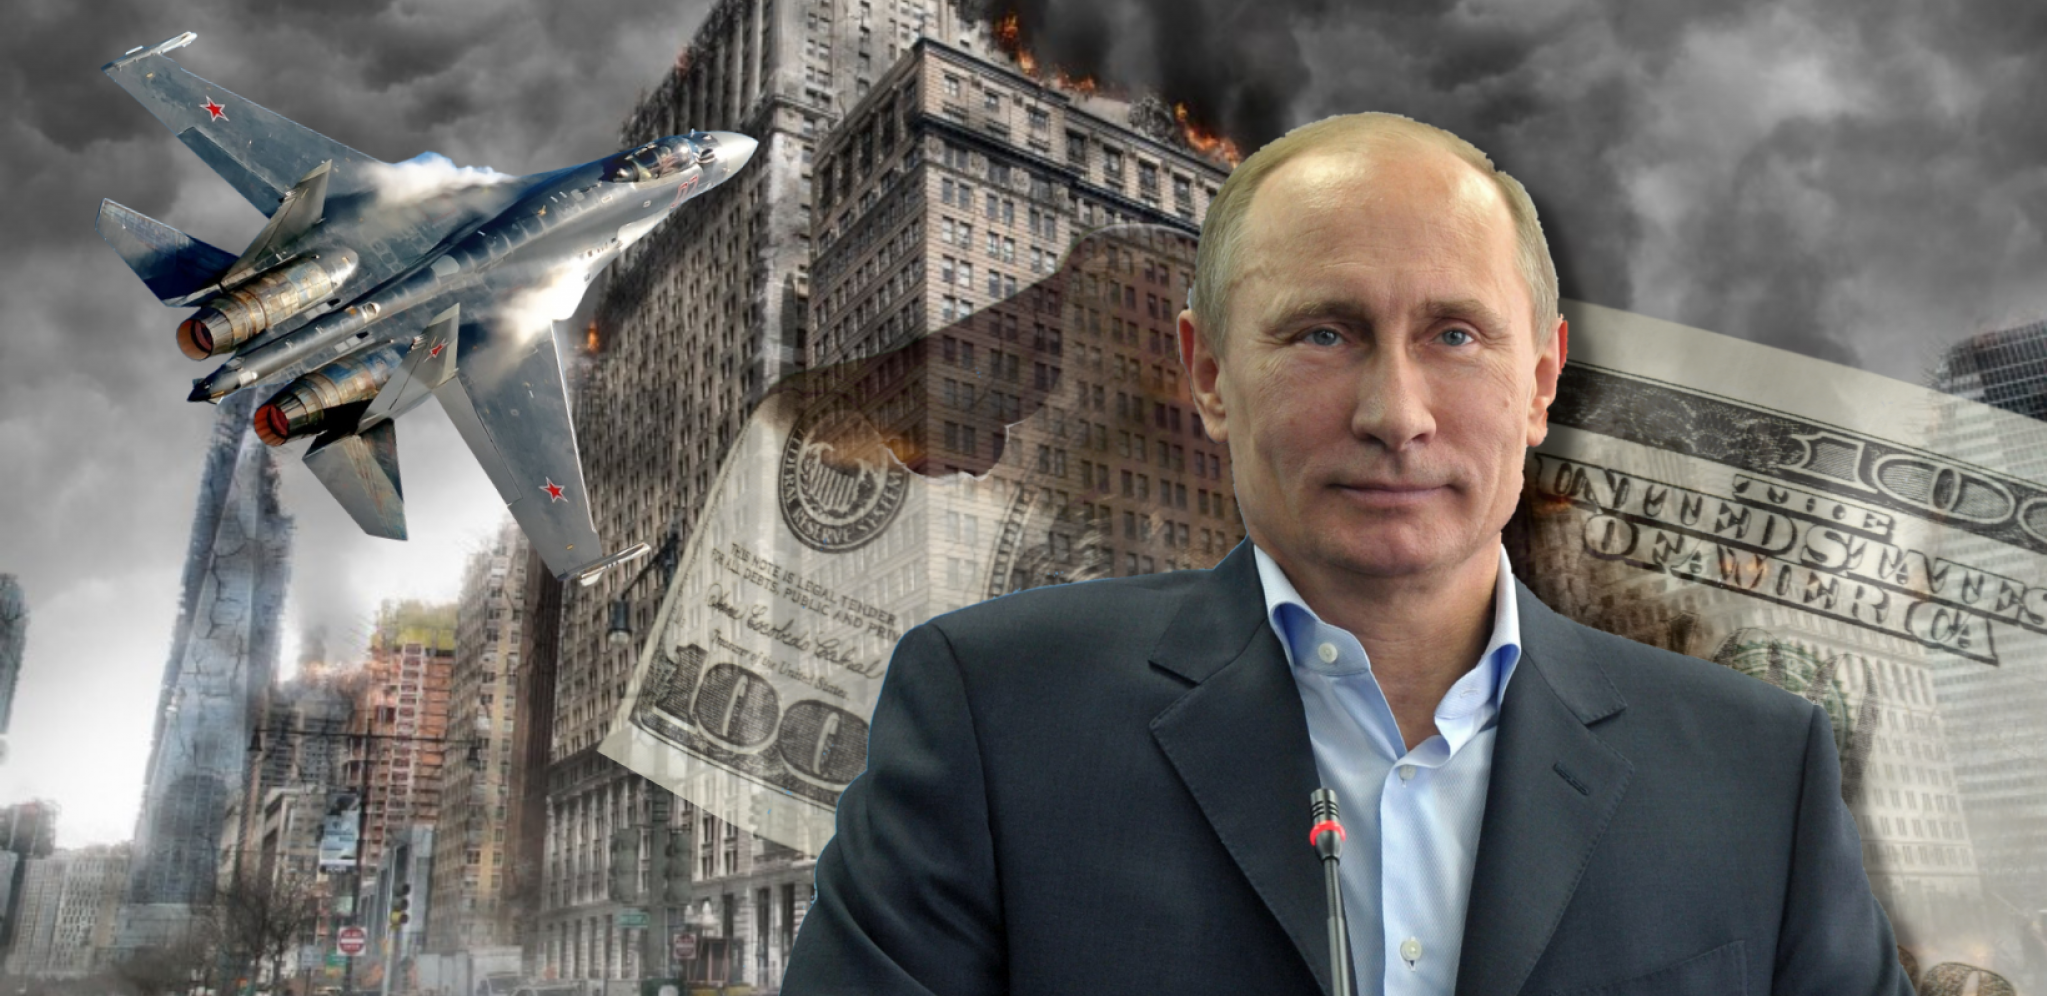 AMERIČKI POLITIČARI ŽIVE U FANTAZIJAMA O "NOVOM SVETSKOM PORETKU" Putin je odavno srušio tzv. kolektivni Zapad i to sada izlazi na videlo